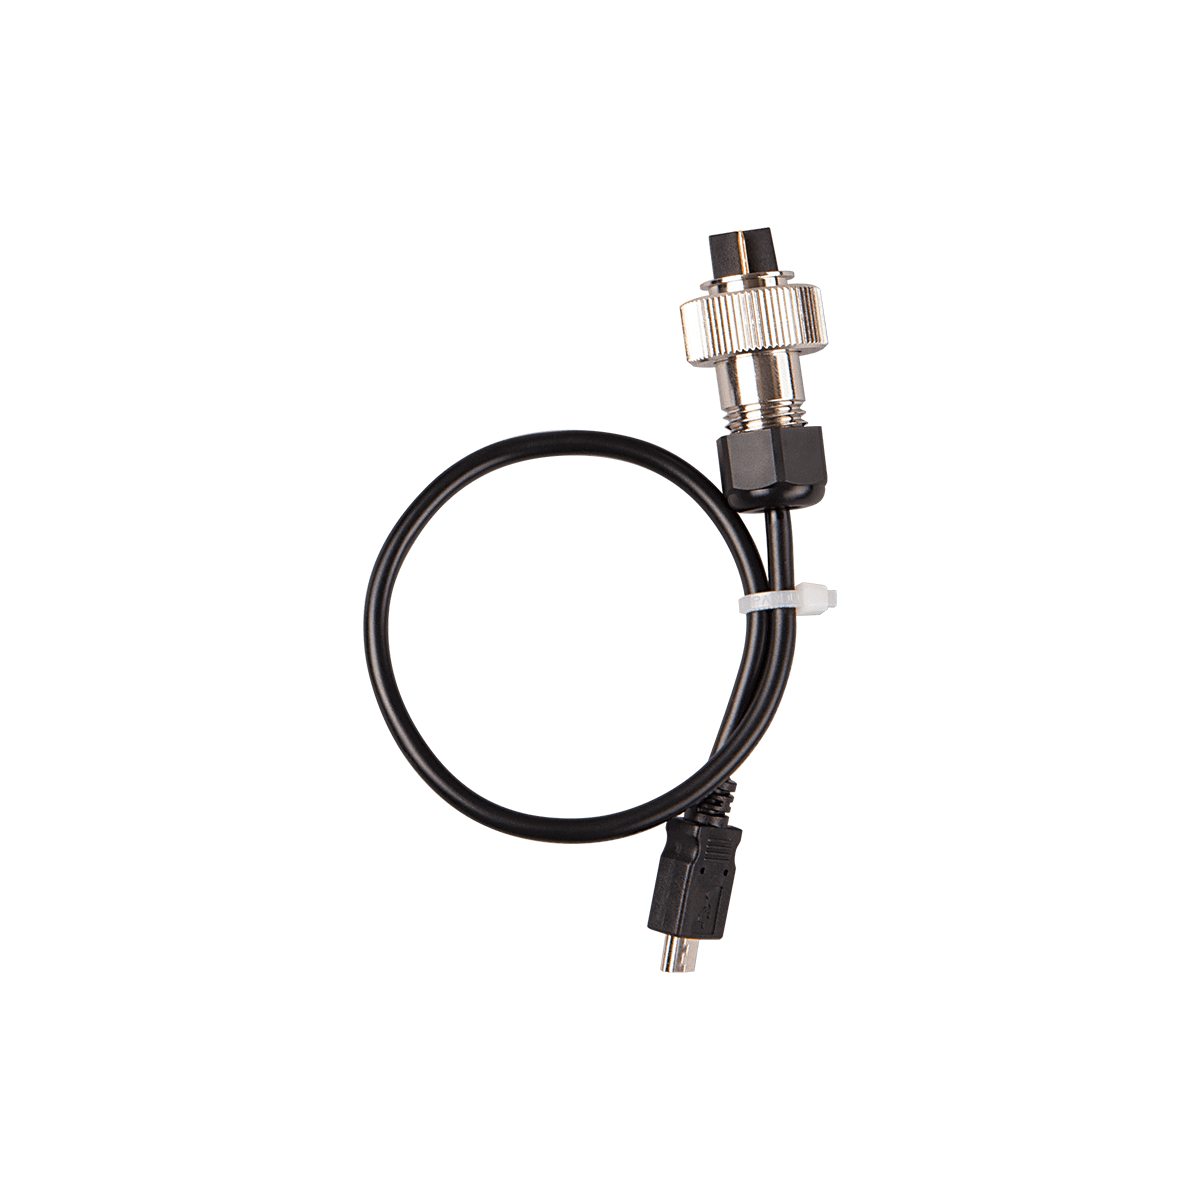 Câble USB - allume cigare Alarmex moto